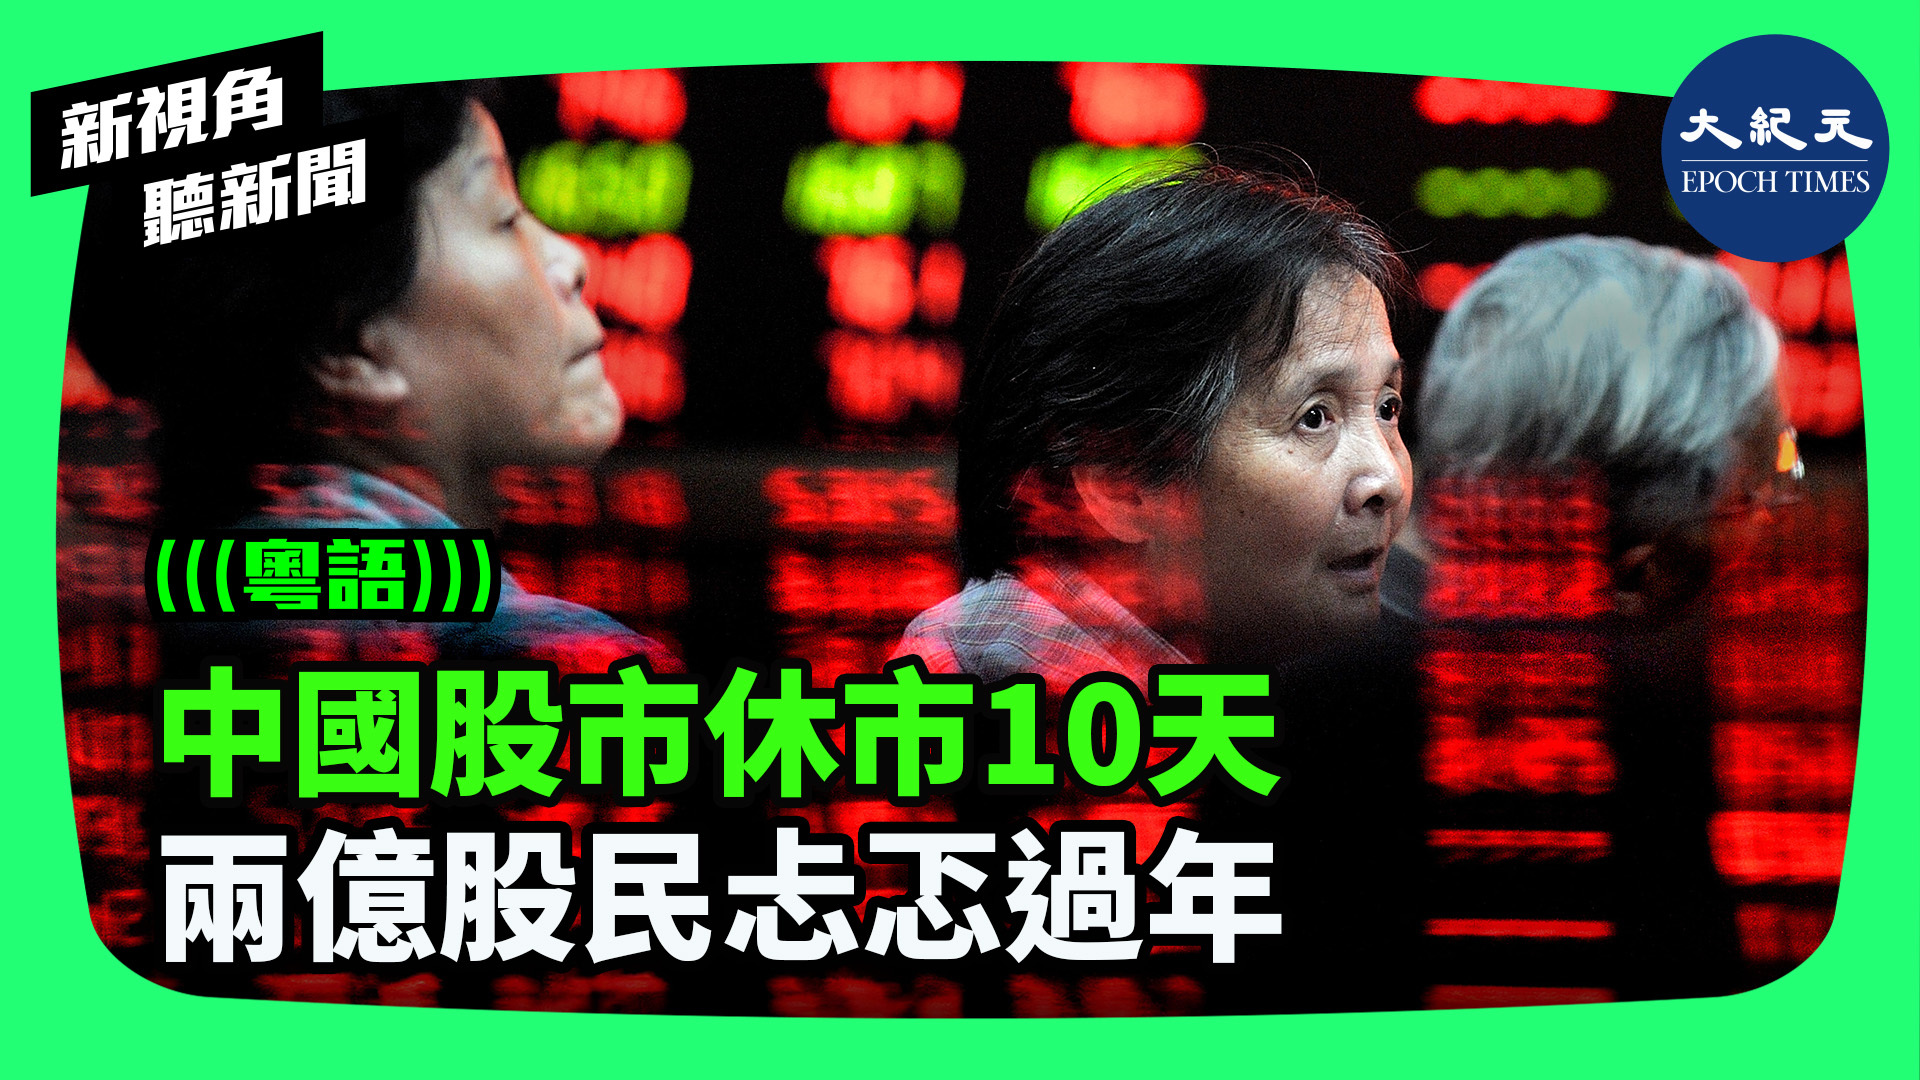 中國股市休市10天 兩億股民忐忑過年